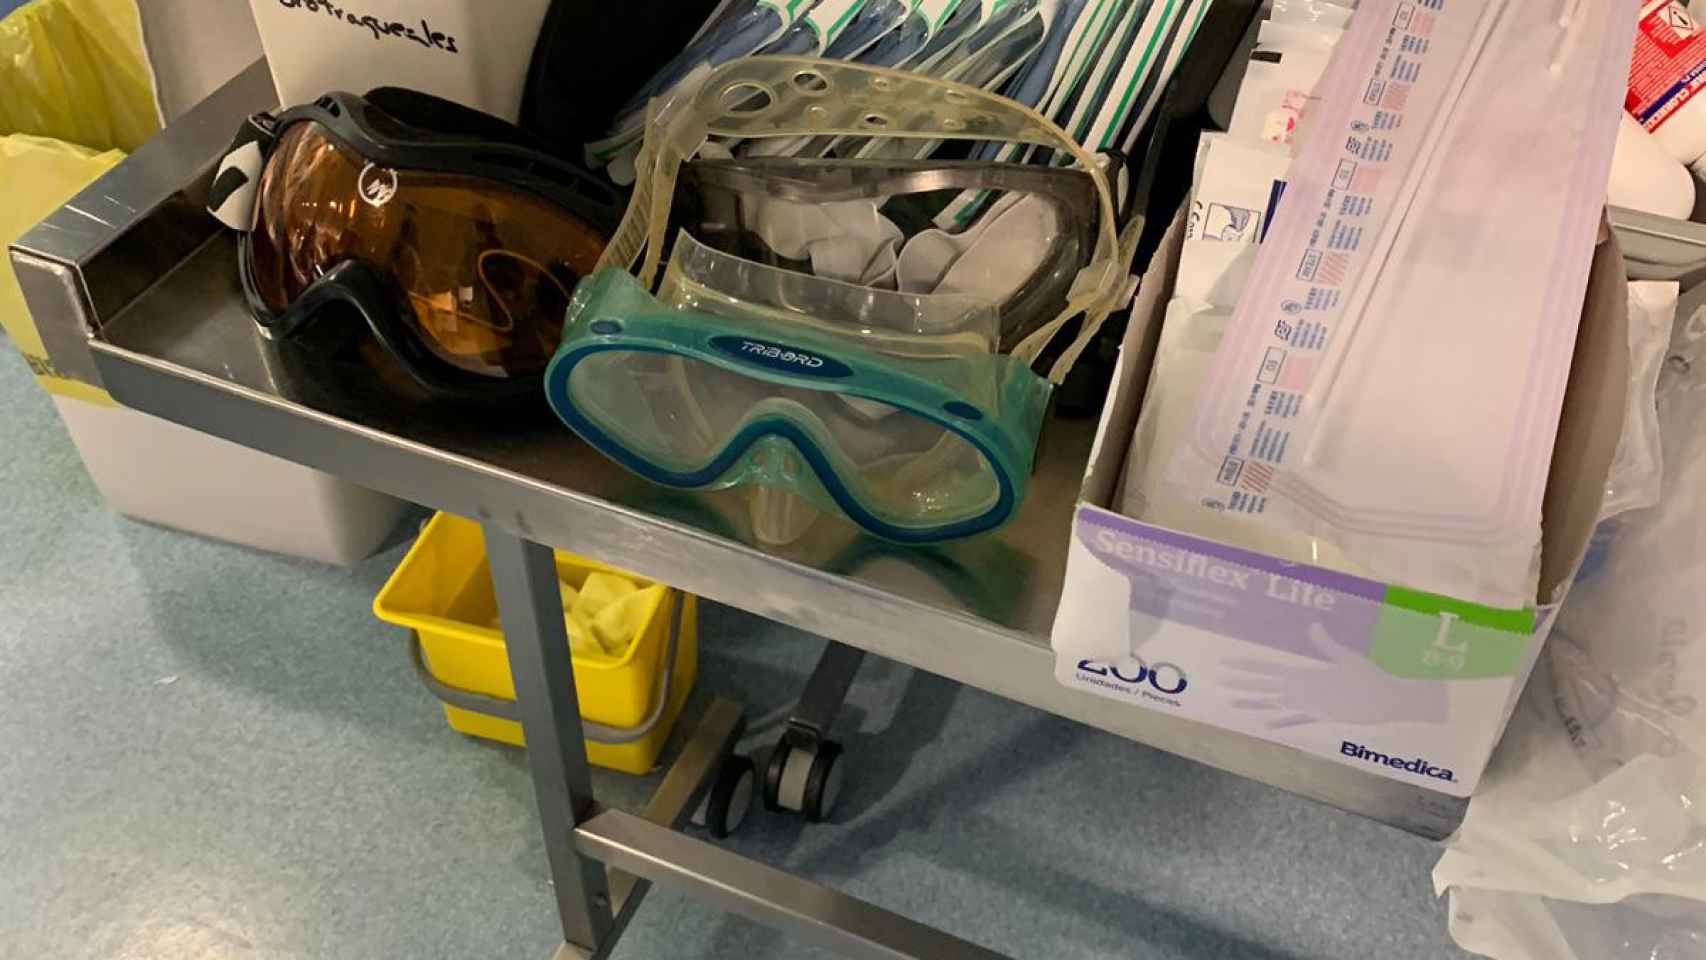 Una gafa de esquí y otra de buceo que usan los enfermeros en un hospital de Terrassa / MA